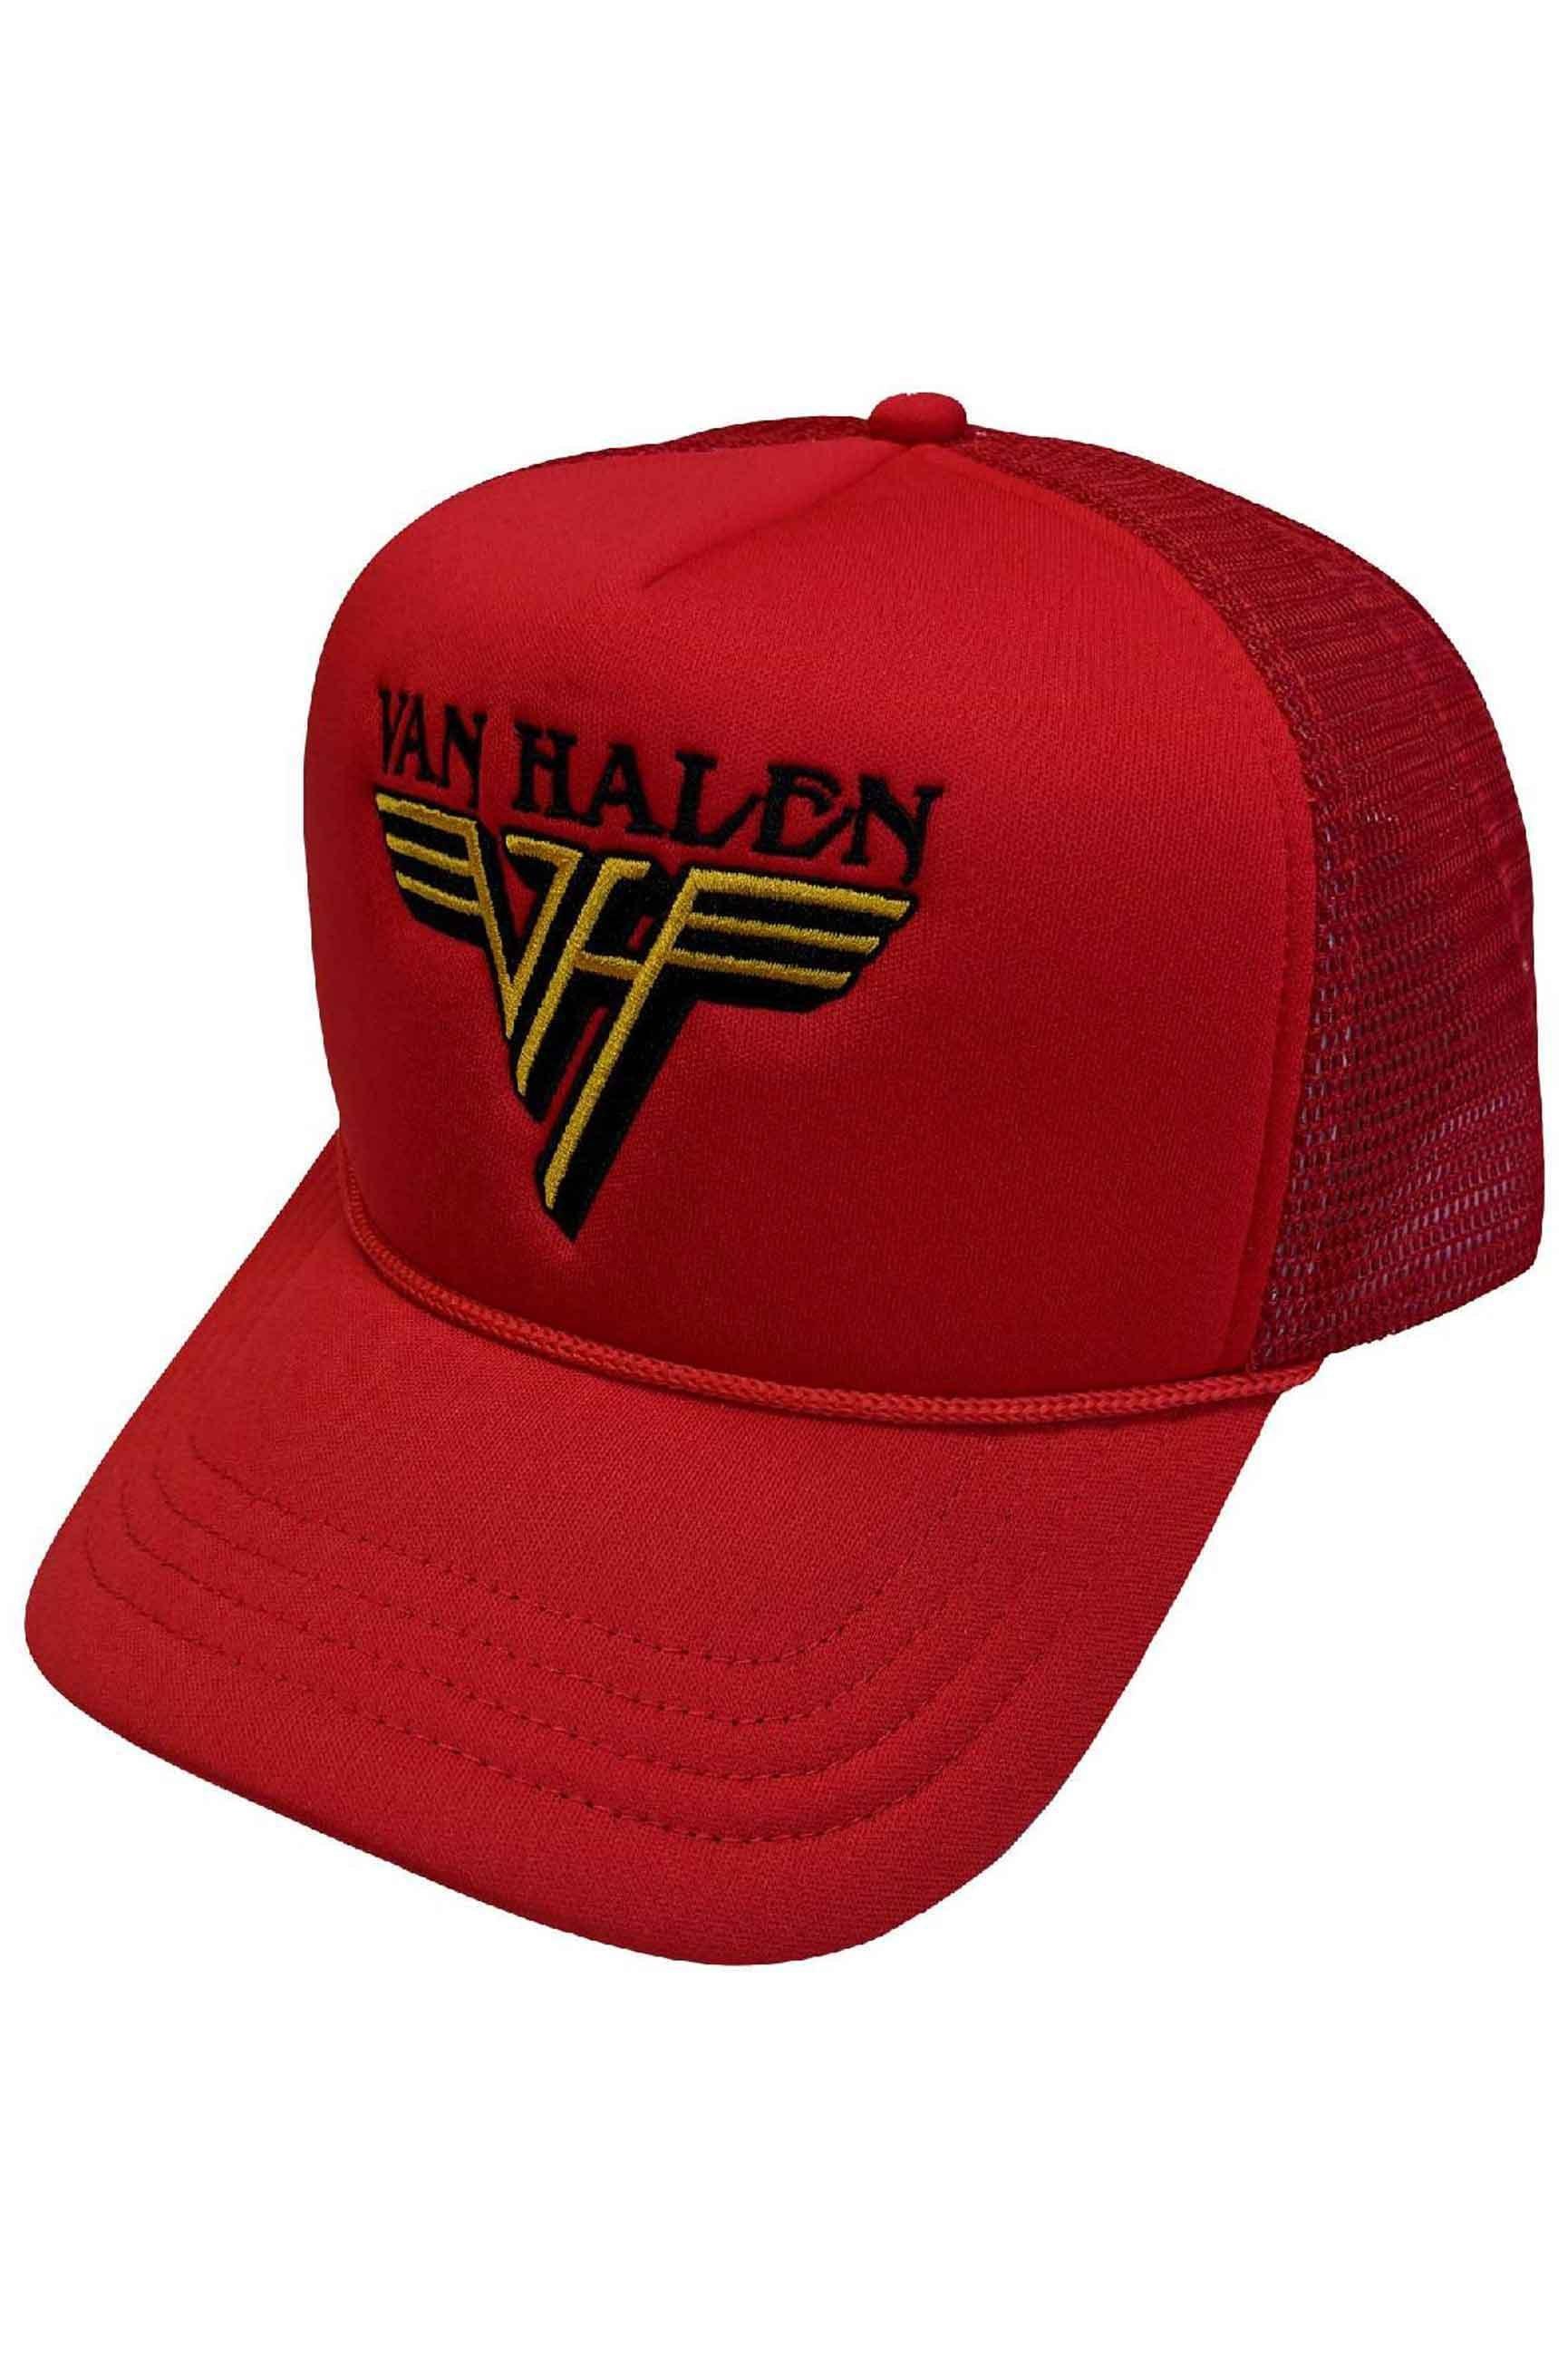 Бейсбольная кепка Trucker с текстовым ремешком и логотипом Van Halen, красный компакт диски warner bros records van halen van halen cd